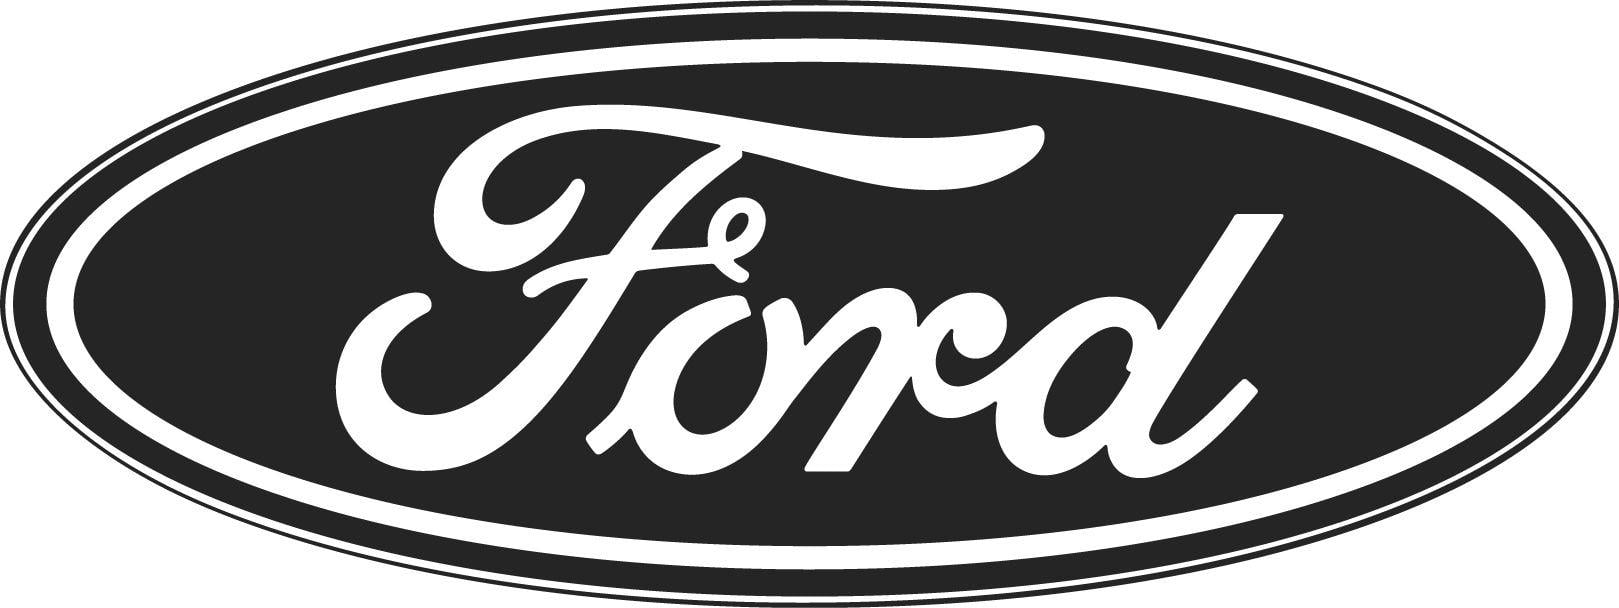 Black and White Ford Logo - Ford Trucks For Sale in Valencia, CA | Valencia Auto Center